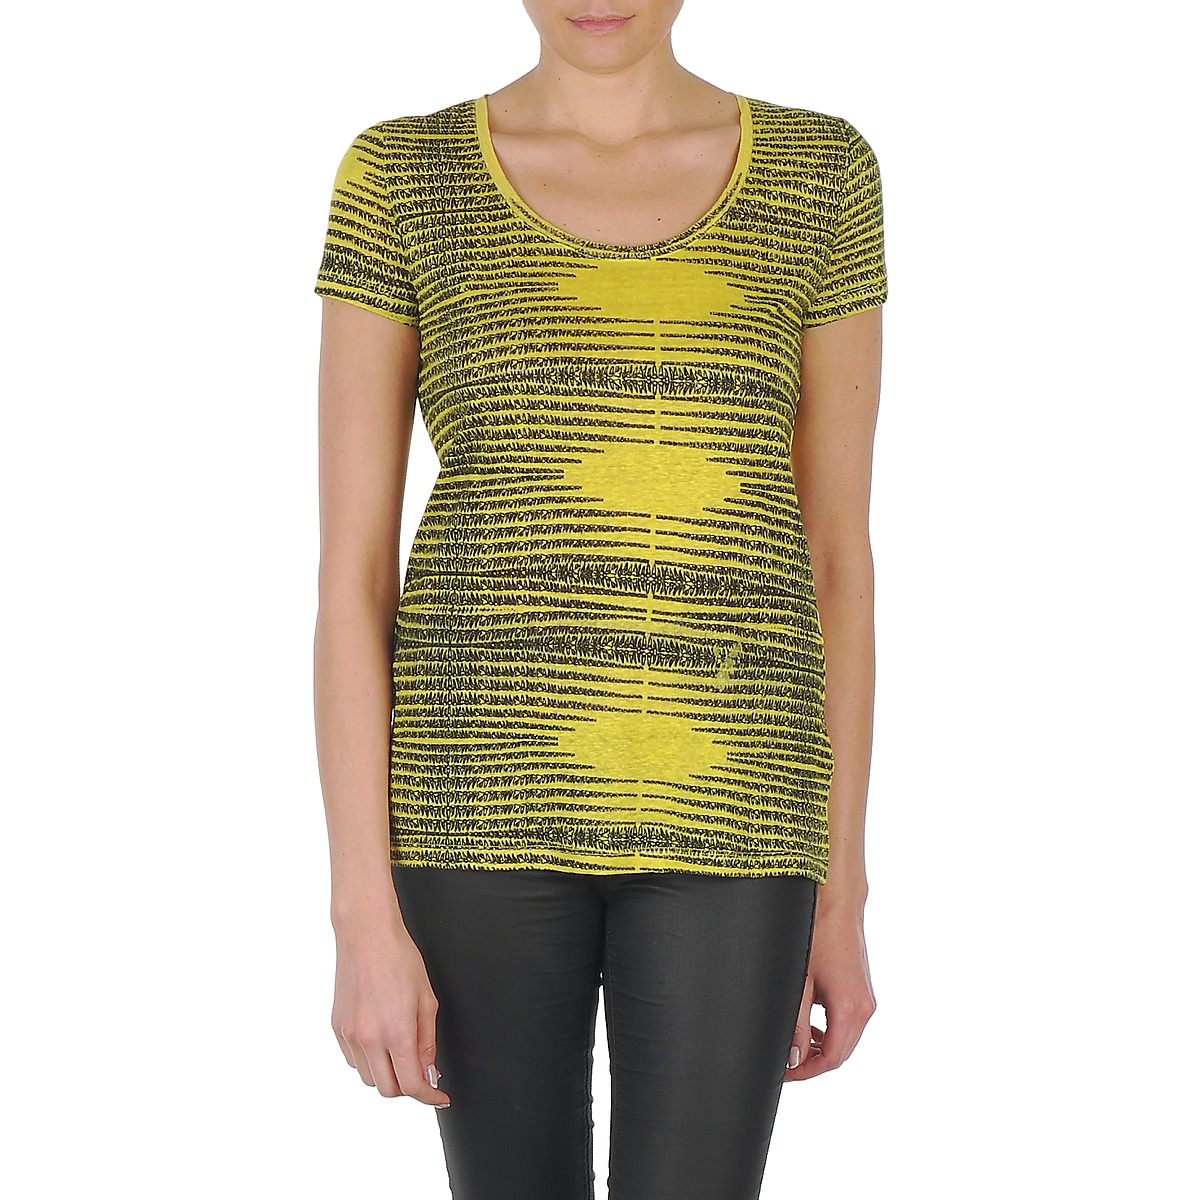 vaatteet Naiset Lyhythihainen t-paita Eleven Paris DARDOOT Keltainen